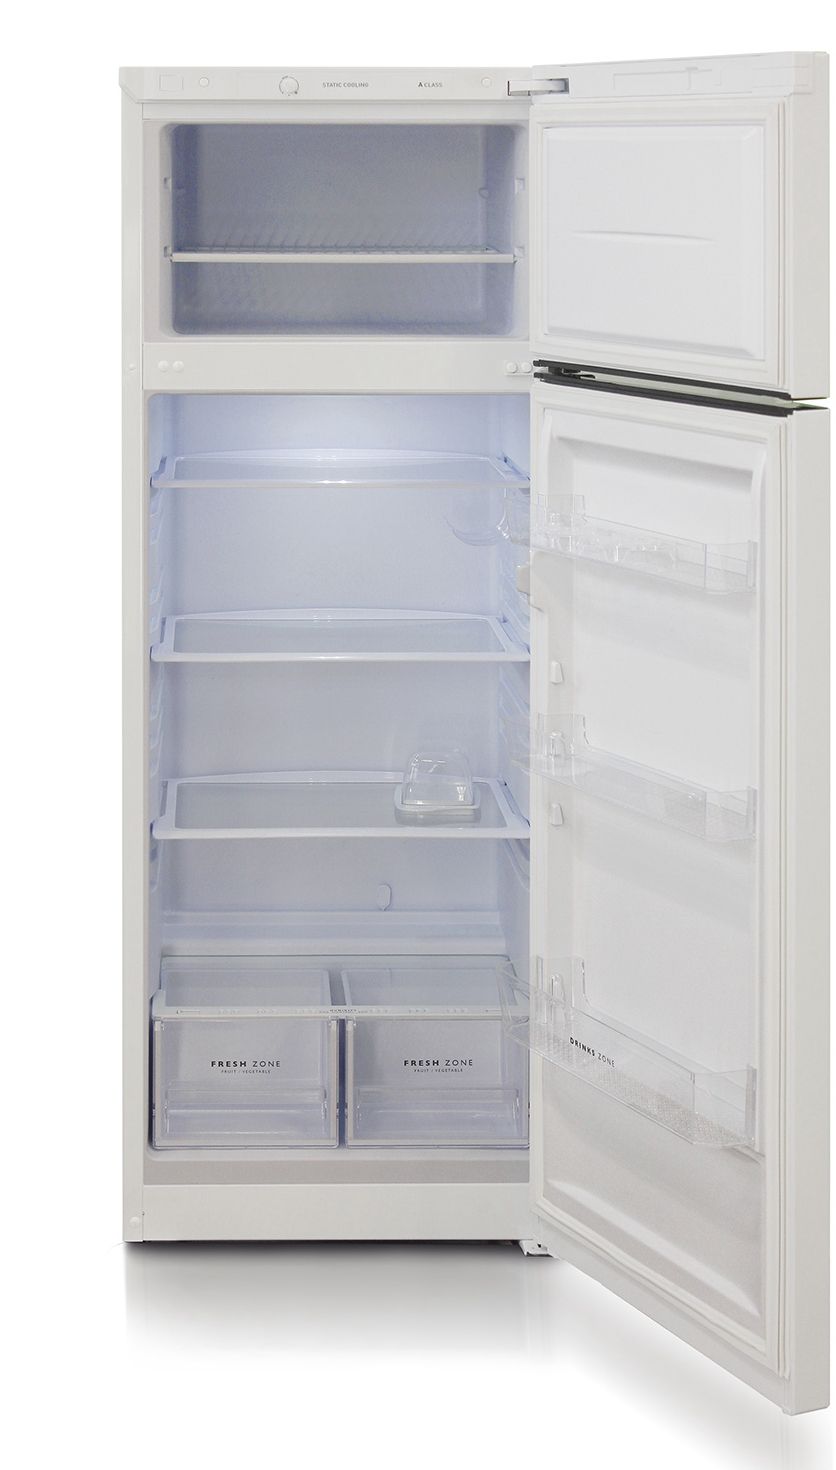 холодильник бирюса 6035, купить в Красноярске холодильник бирюса 6035,  купить в Красноярске дешево холодильник бирюса 6035, купить в Красноярске минимальной цене холодильник бирюса 6035